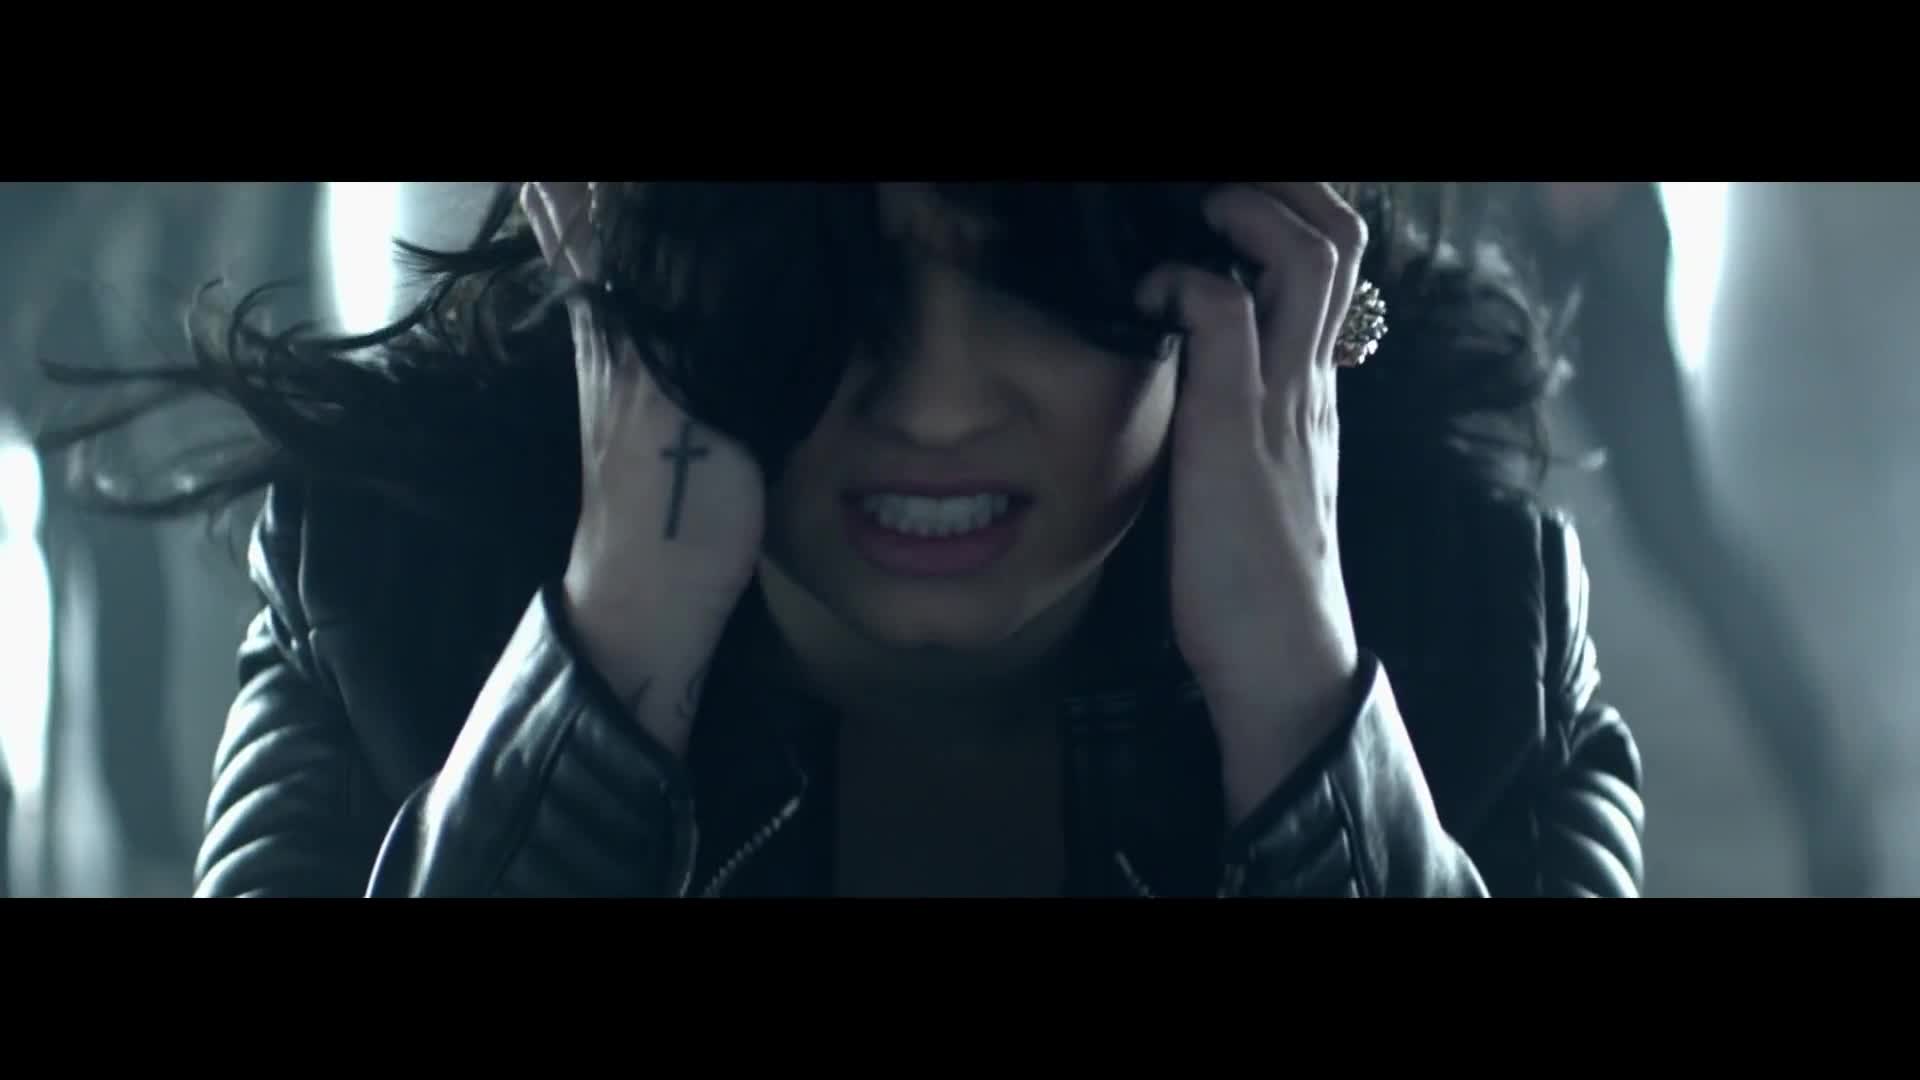 Demi Lovato - Heart Attack {Music Video} - Demi Lovato Photo (35688409) - Fanpop1920 x 1080